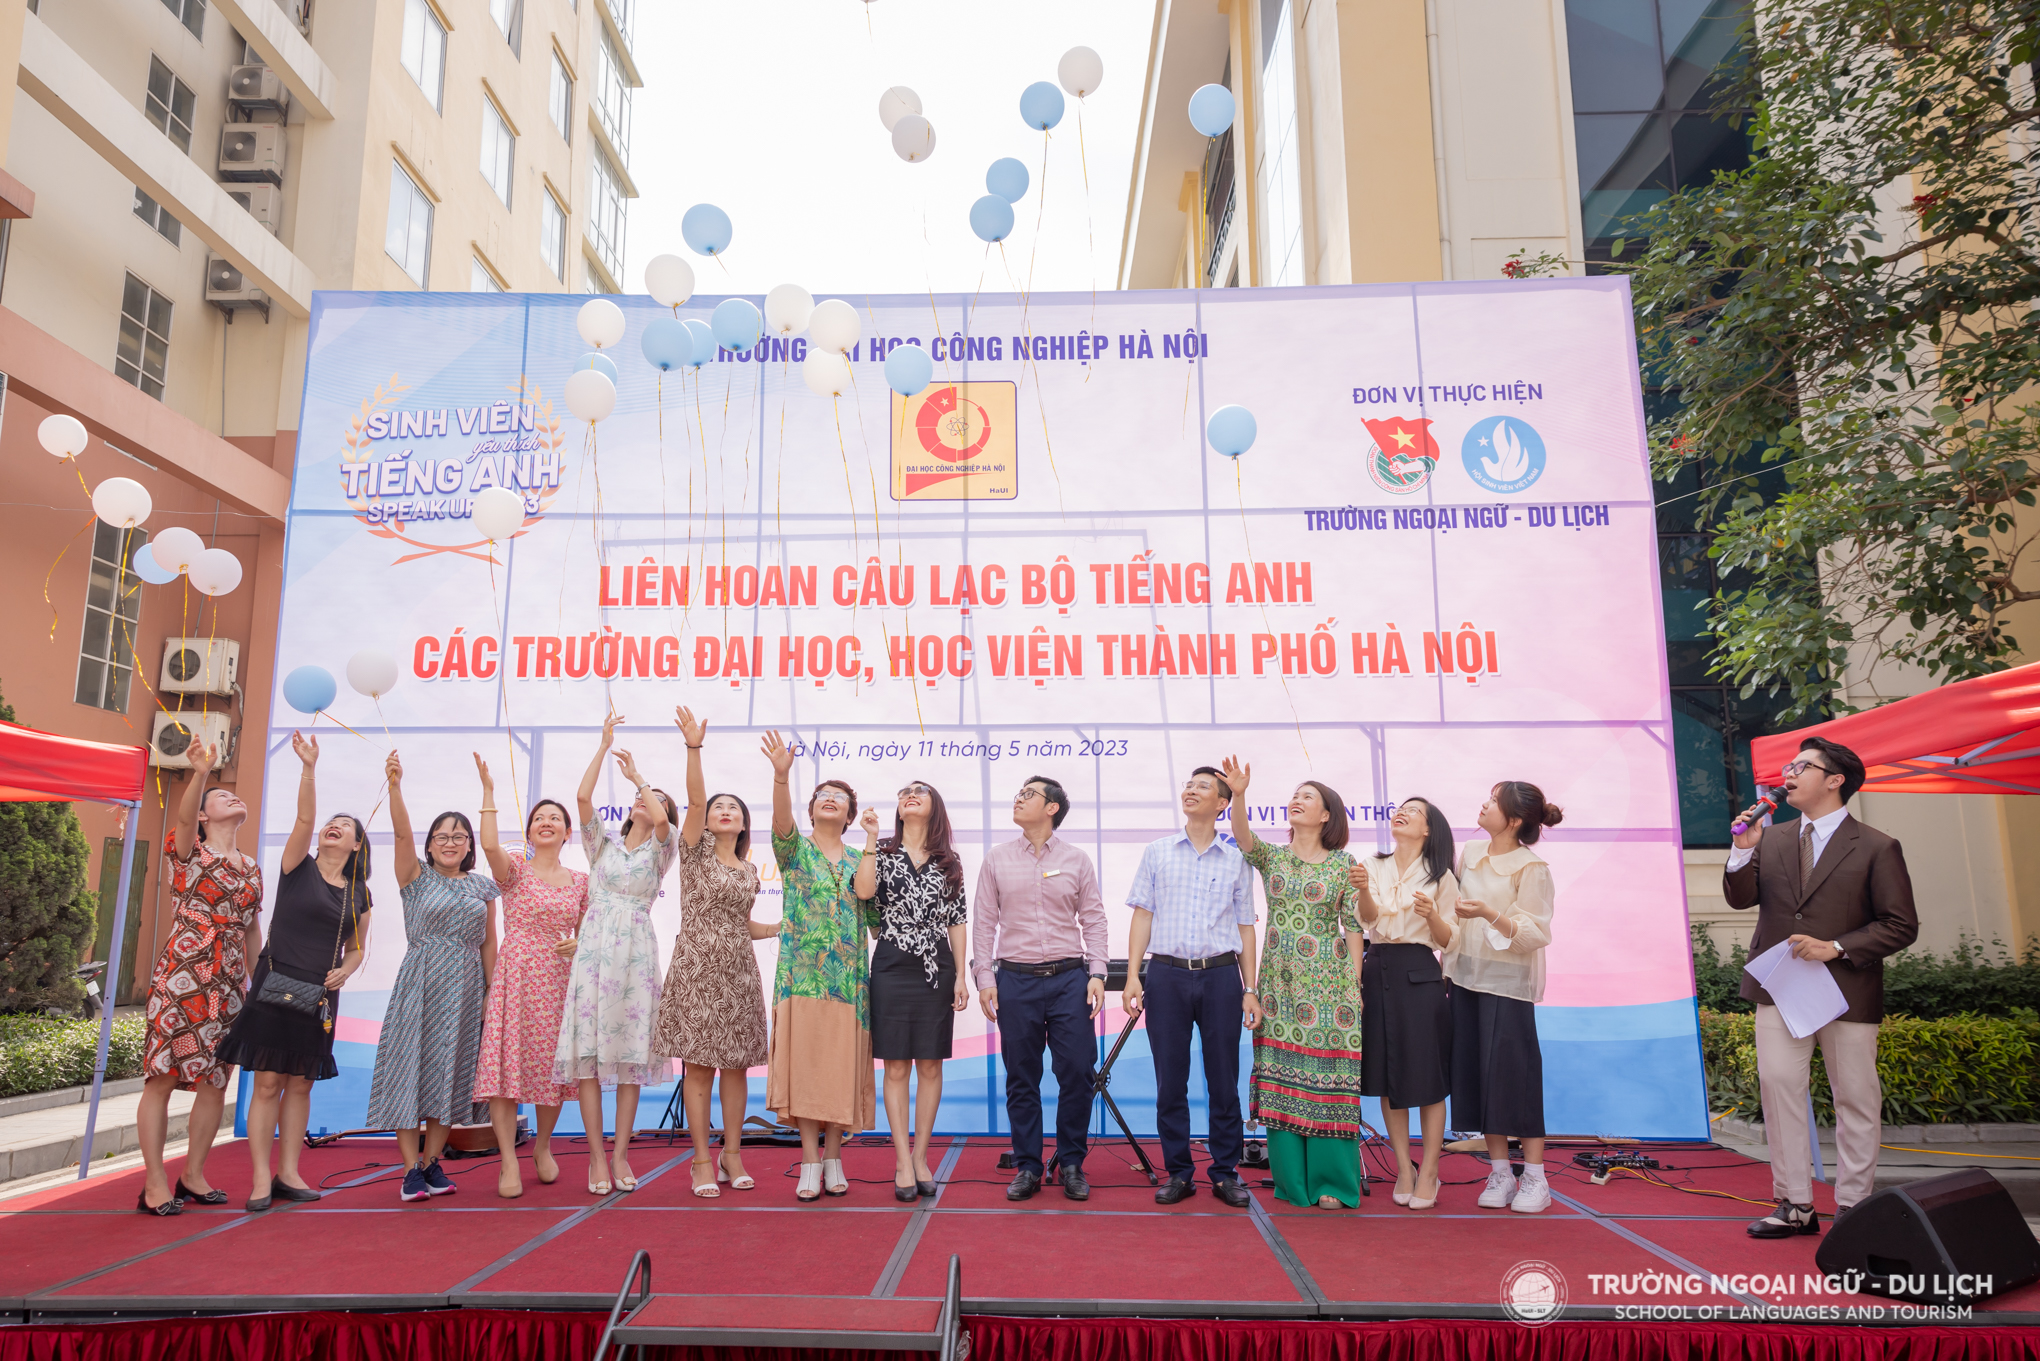 Nghi thức Khai mạc Liên hoan câu lạc bộ tiếng Anh các trường đại học, học viện thành phố Hà Nội